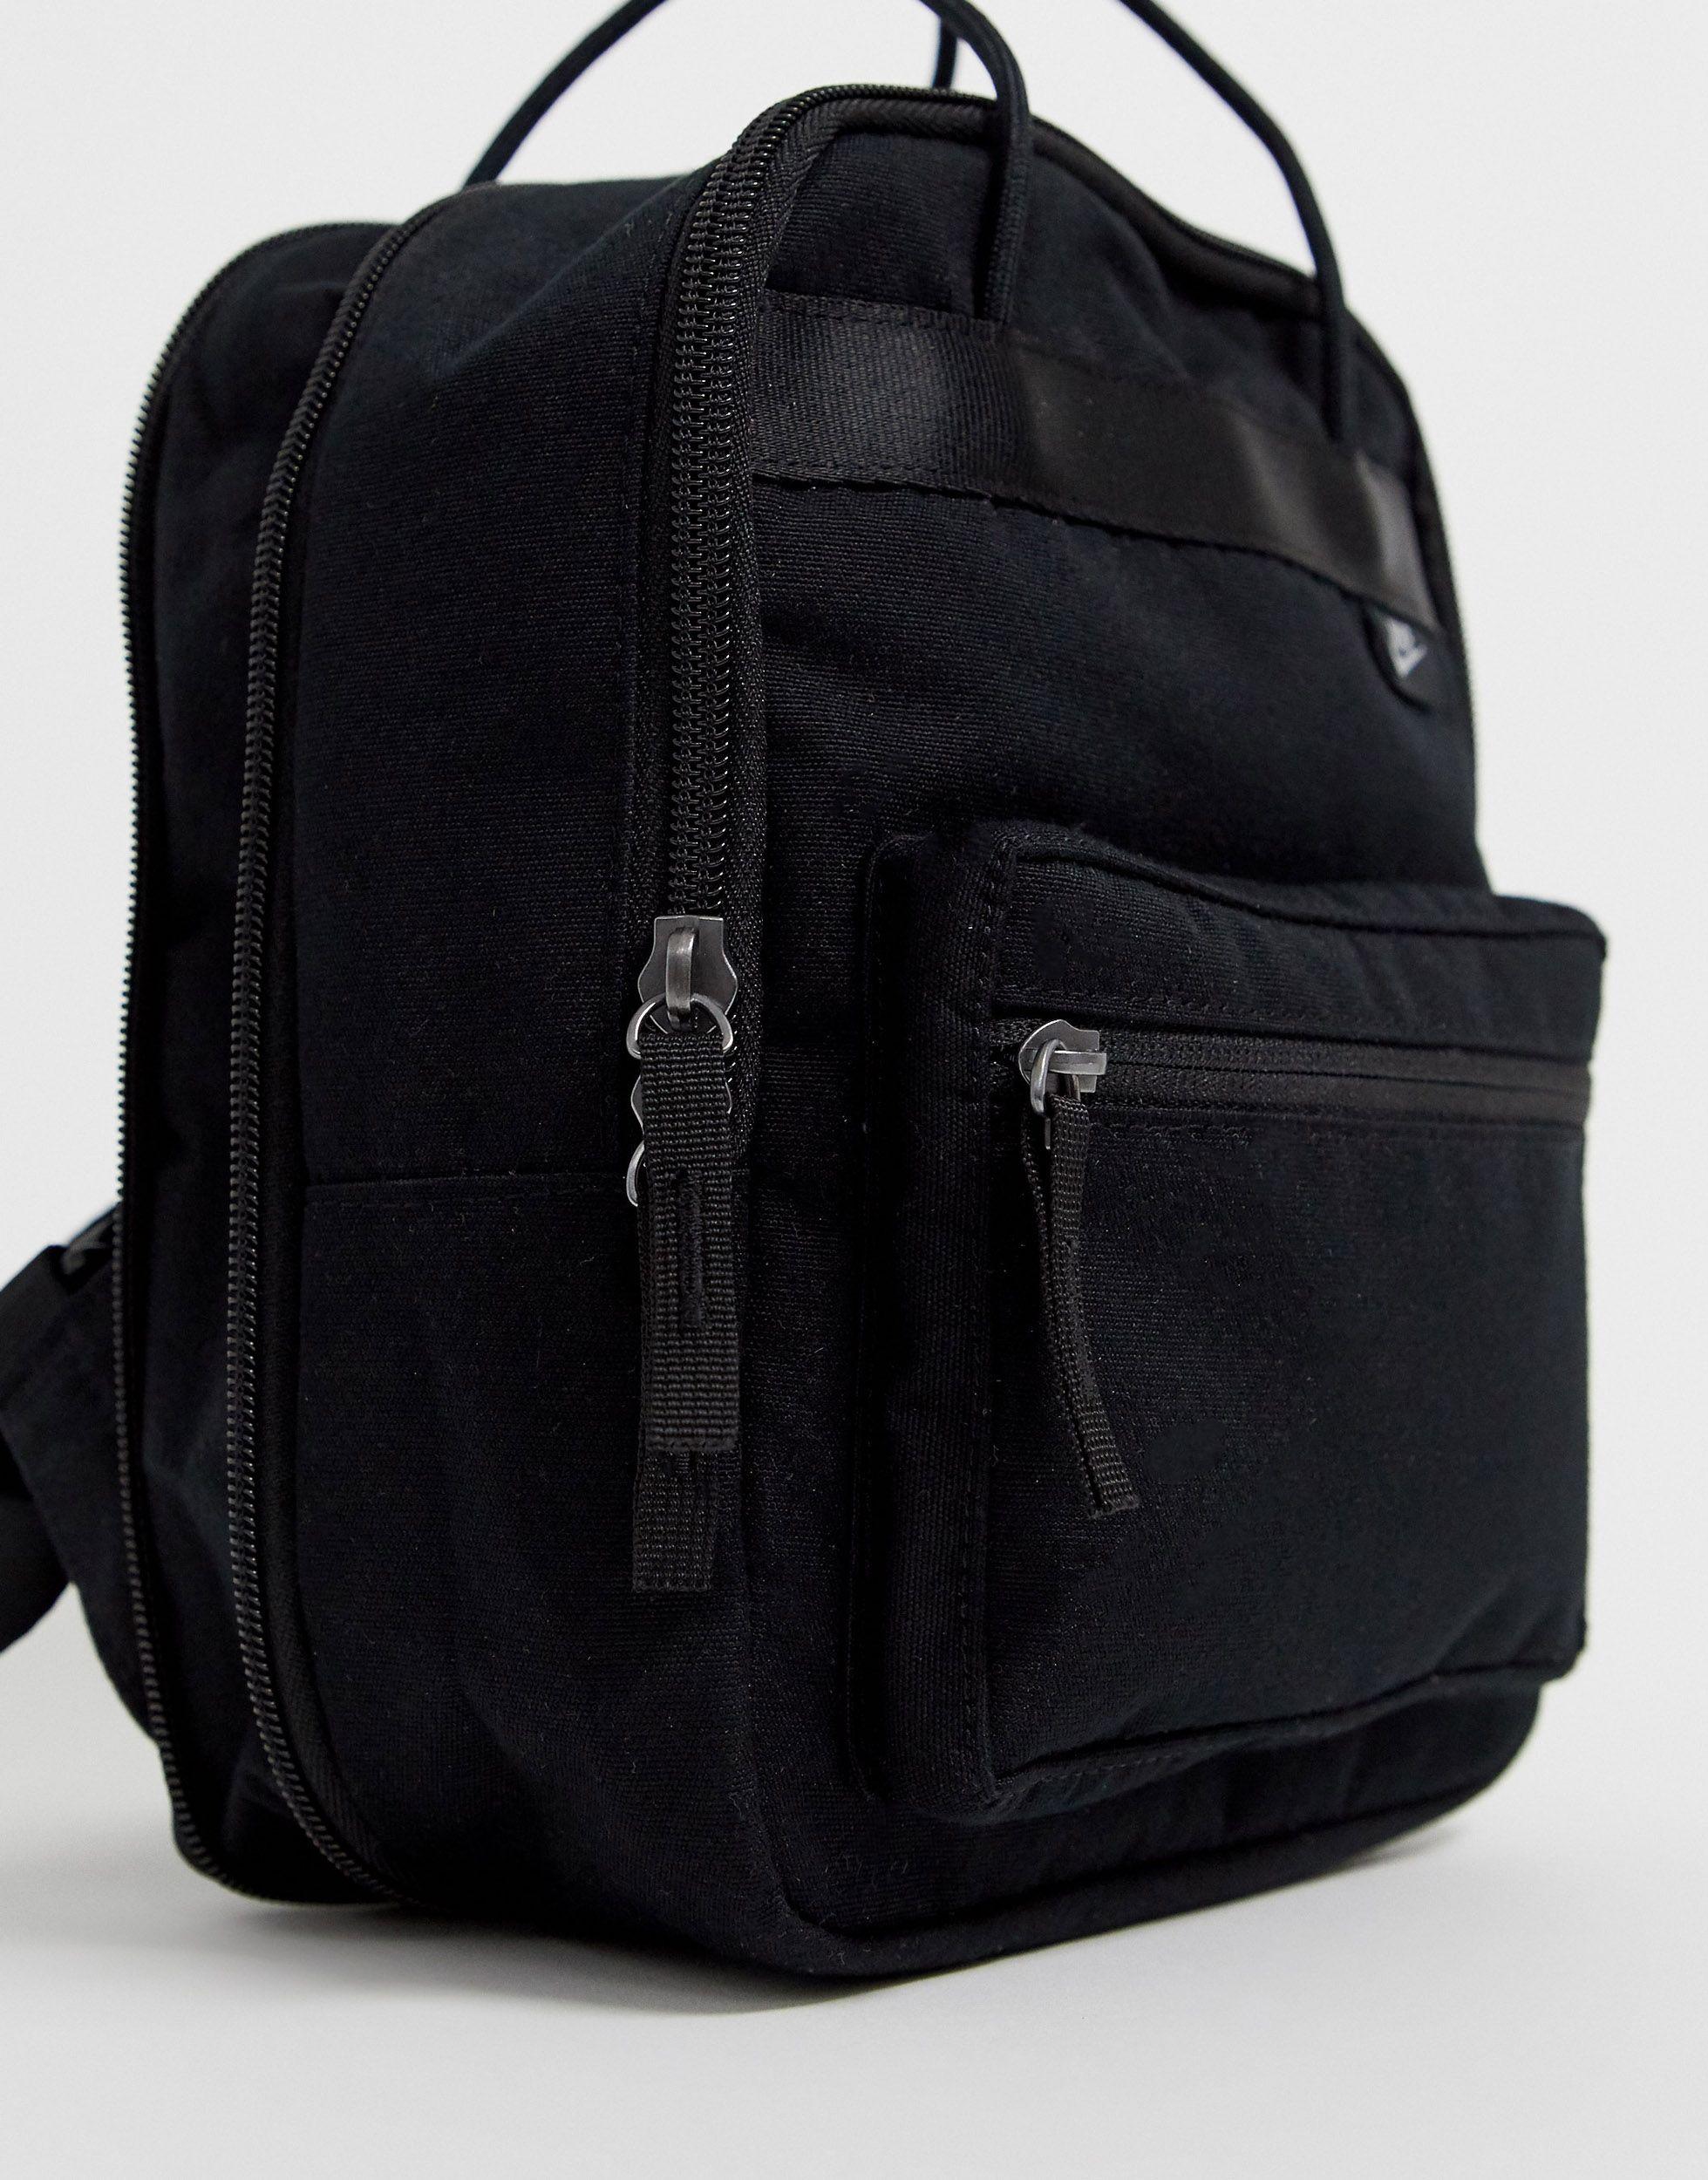 Nike Boxy Mini Backpack in Black | Lyst